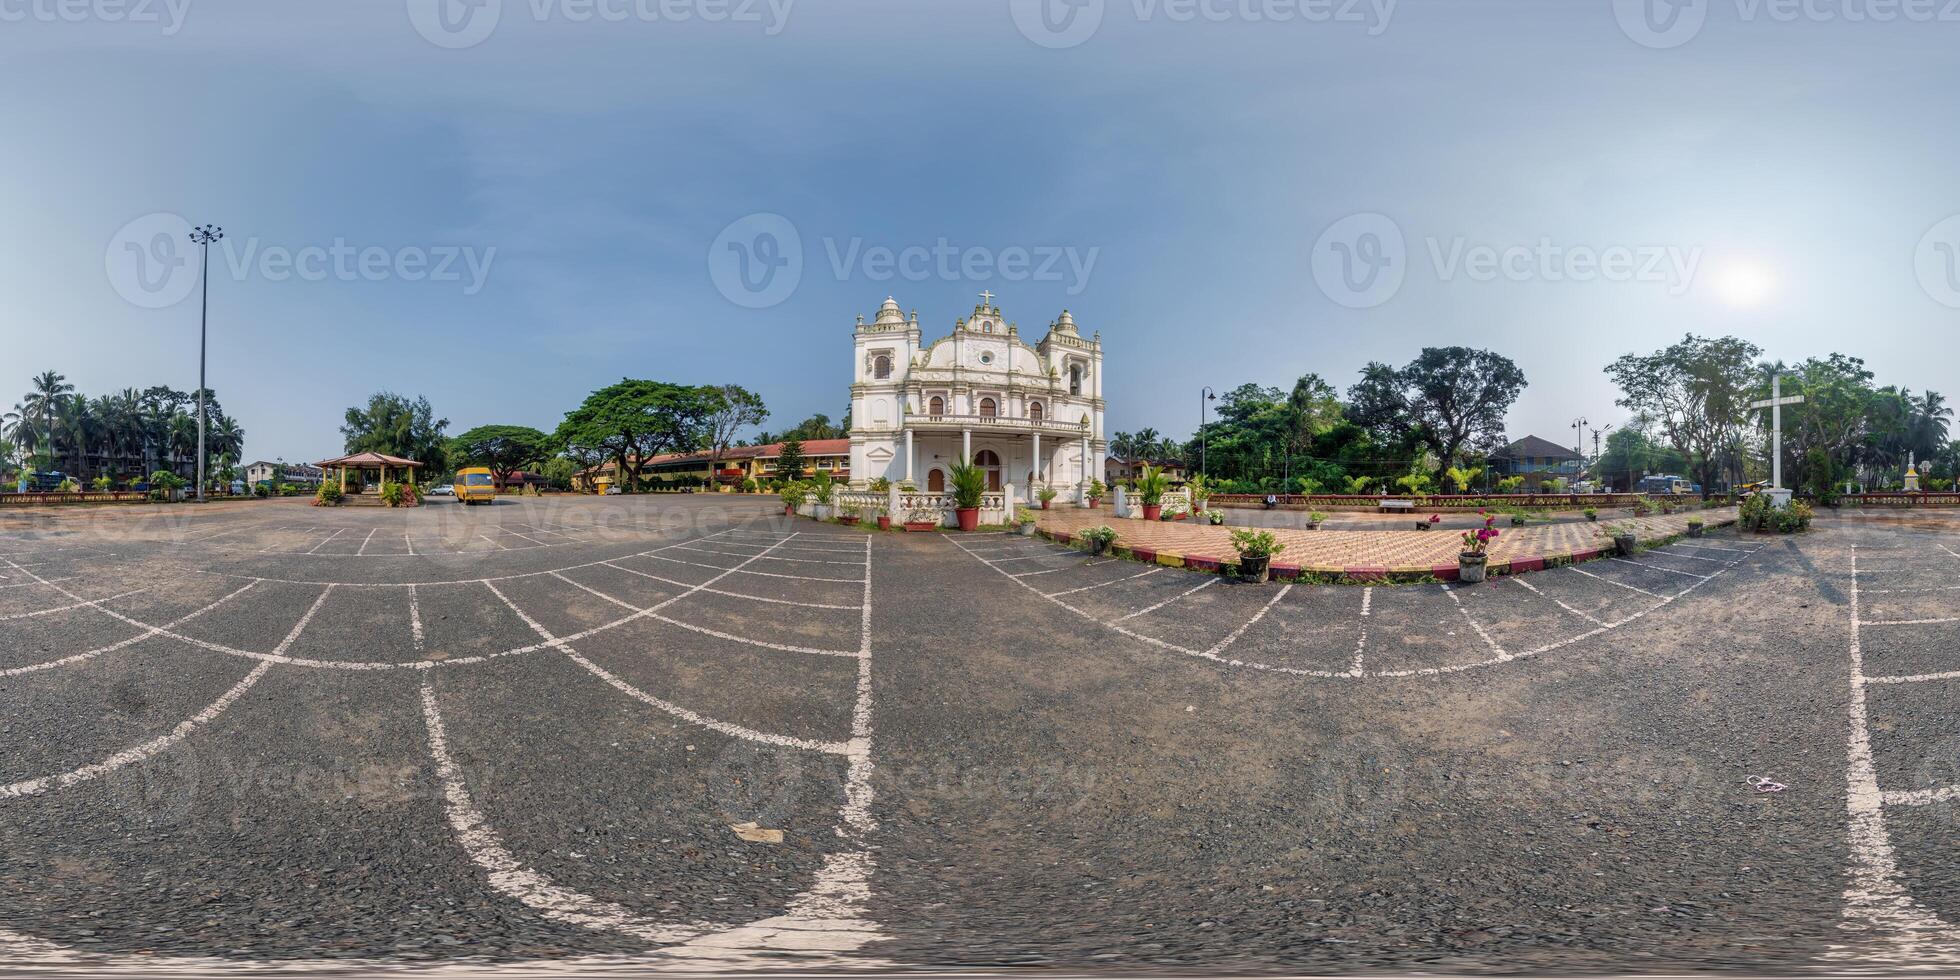 vol hdri 360 panorama van Portugal Katholiek kerk in oerwoud tussen palm bomen in Indisch keerkring dorp in equirectangular projectie met zenit en nadir. vr ar inhoud foto